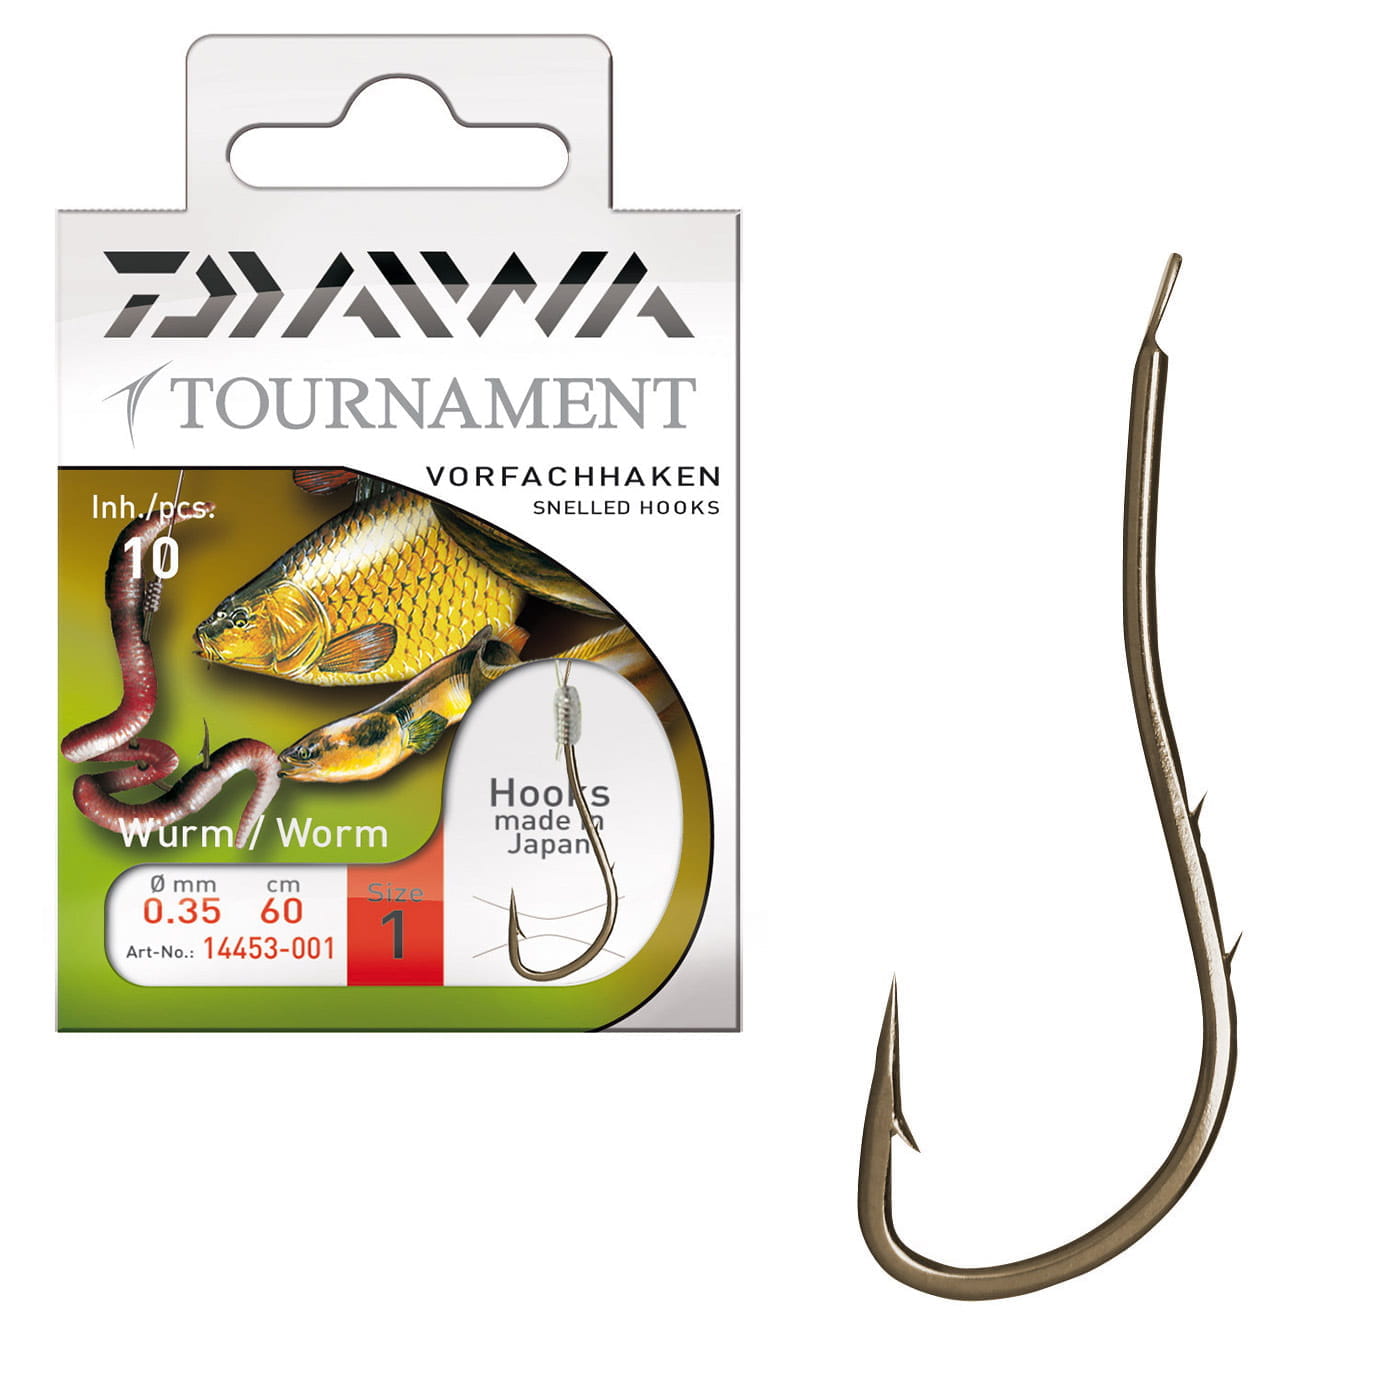 Daiwa Tournament worm hooks 60cm 10 pieces, 4